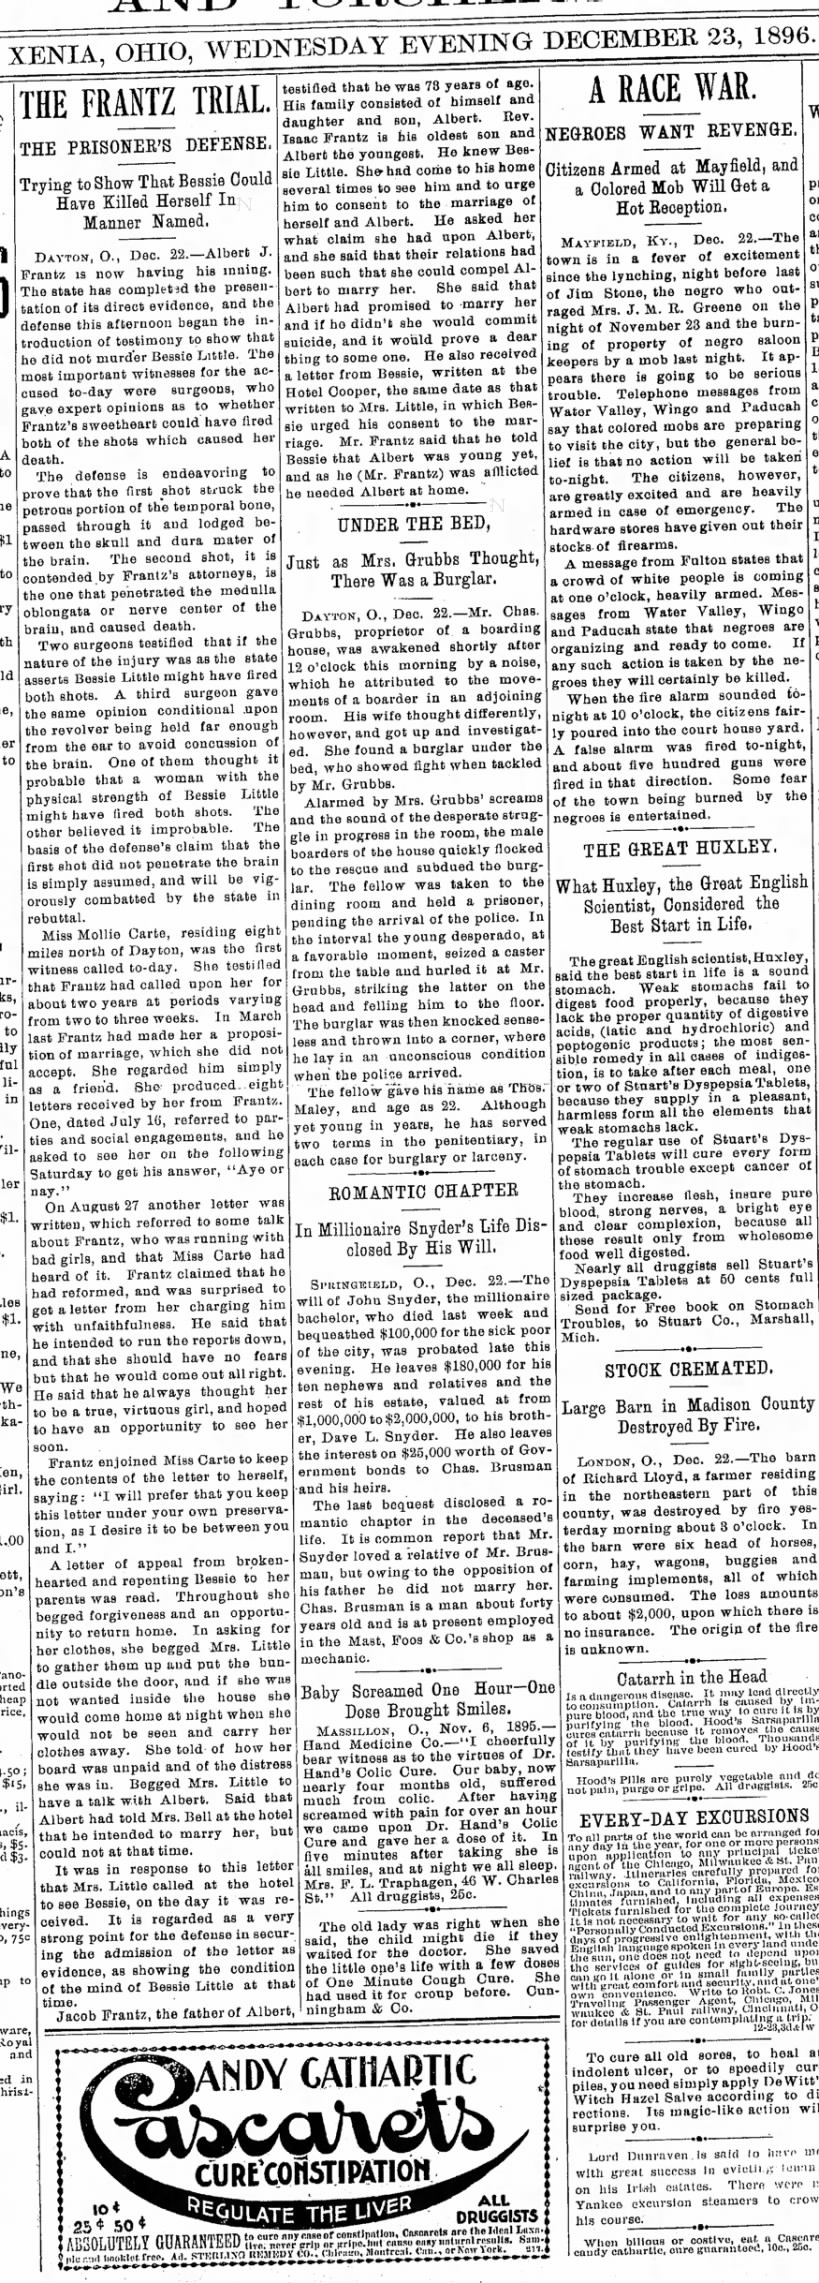 23 Dec. 1896, Xenia Daily Gazette